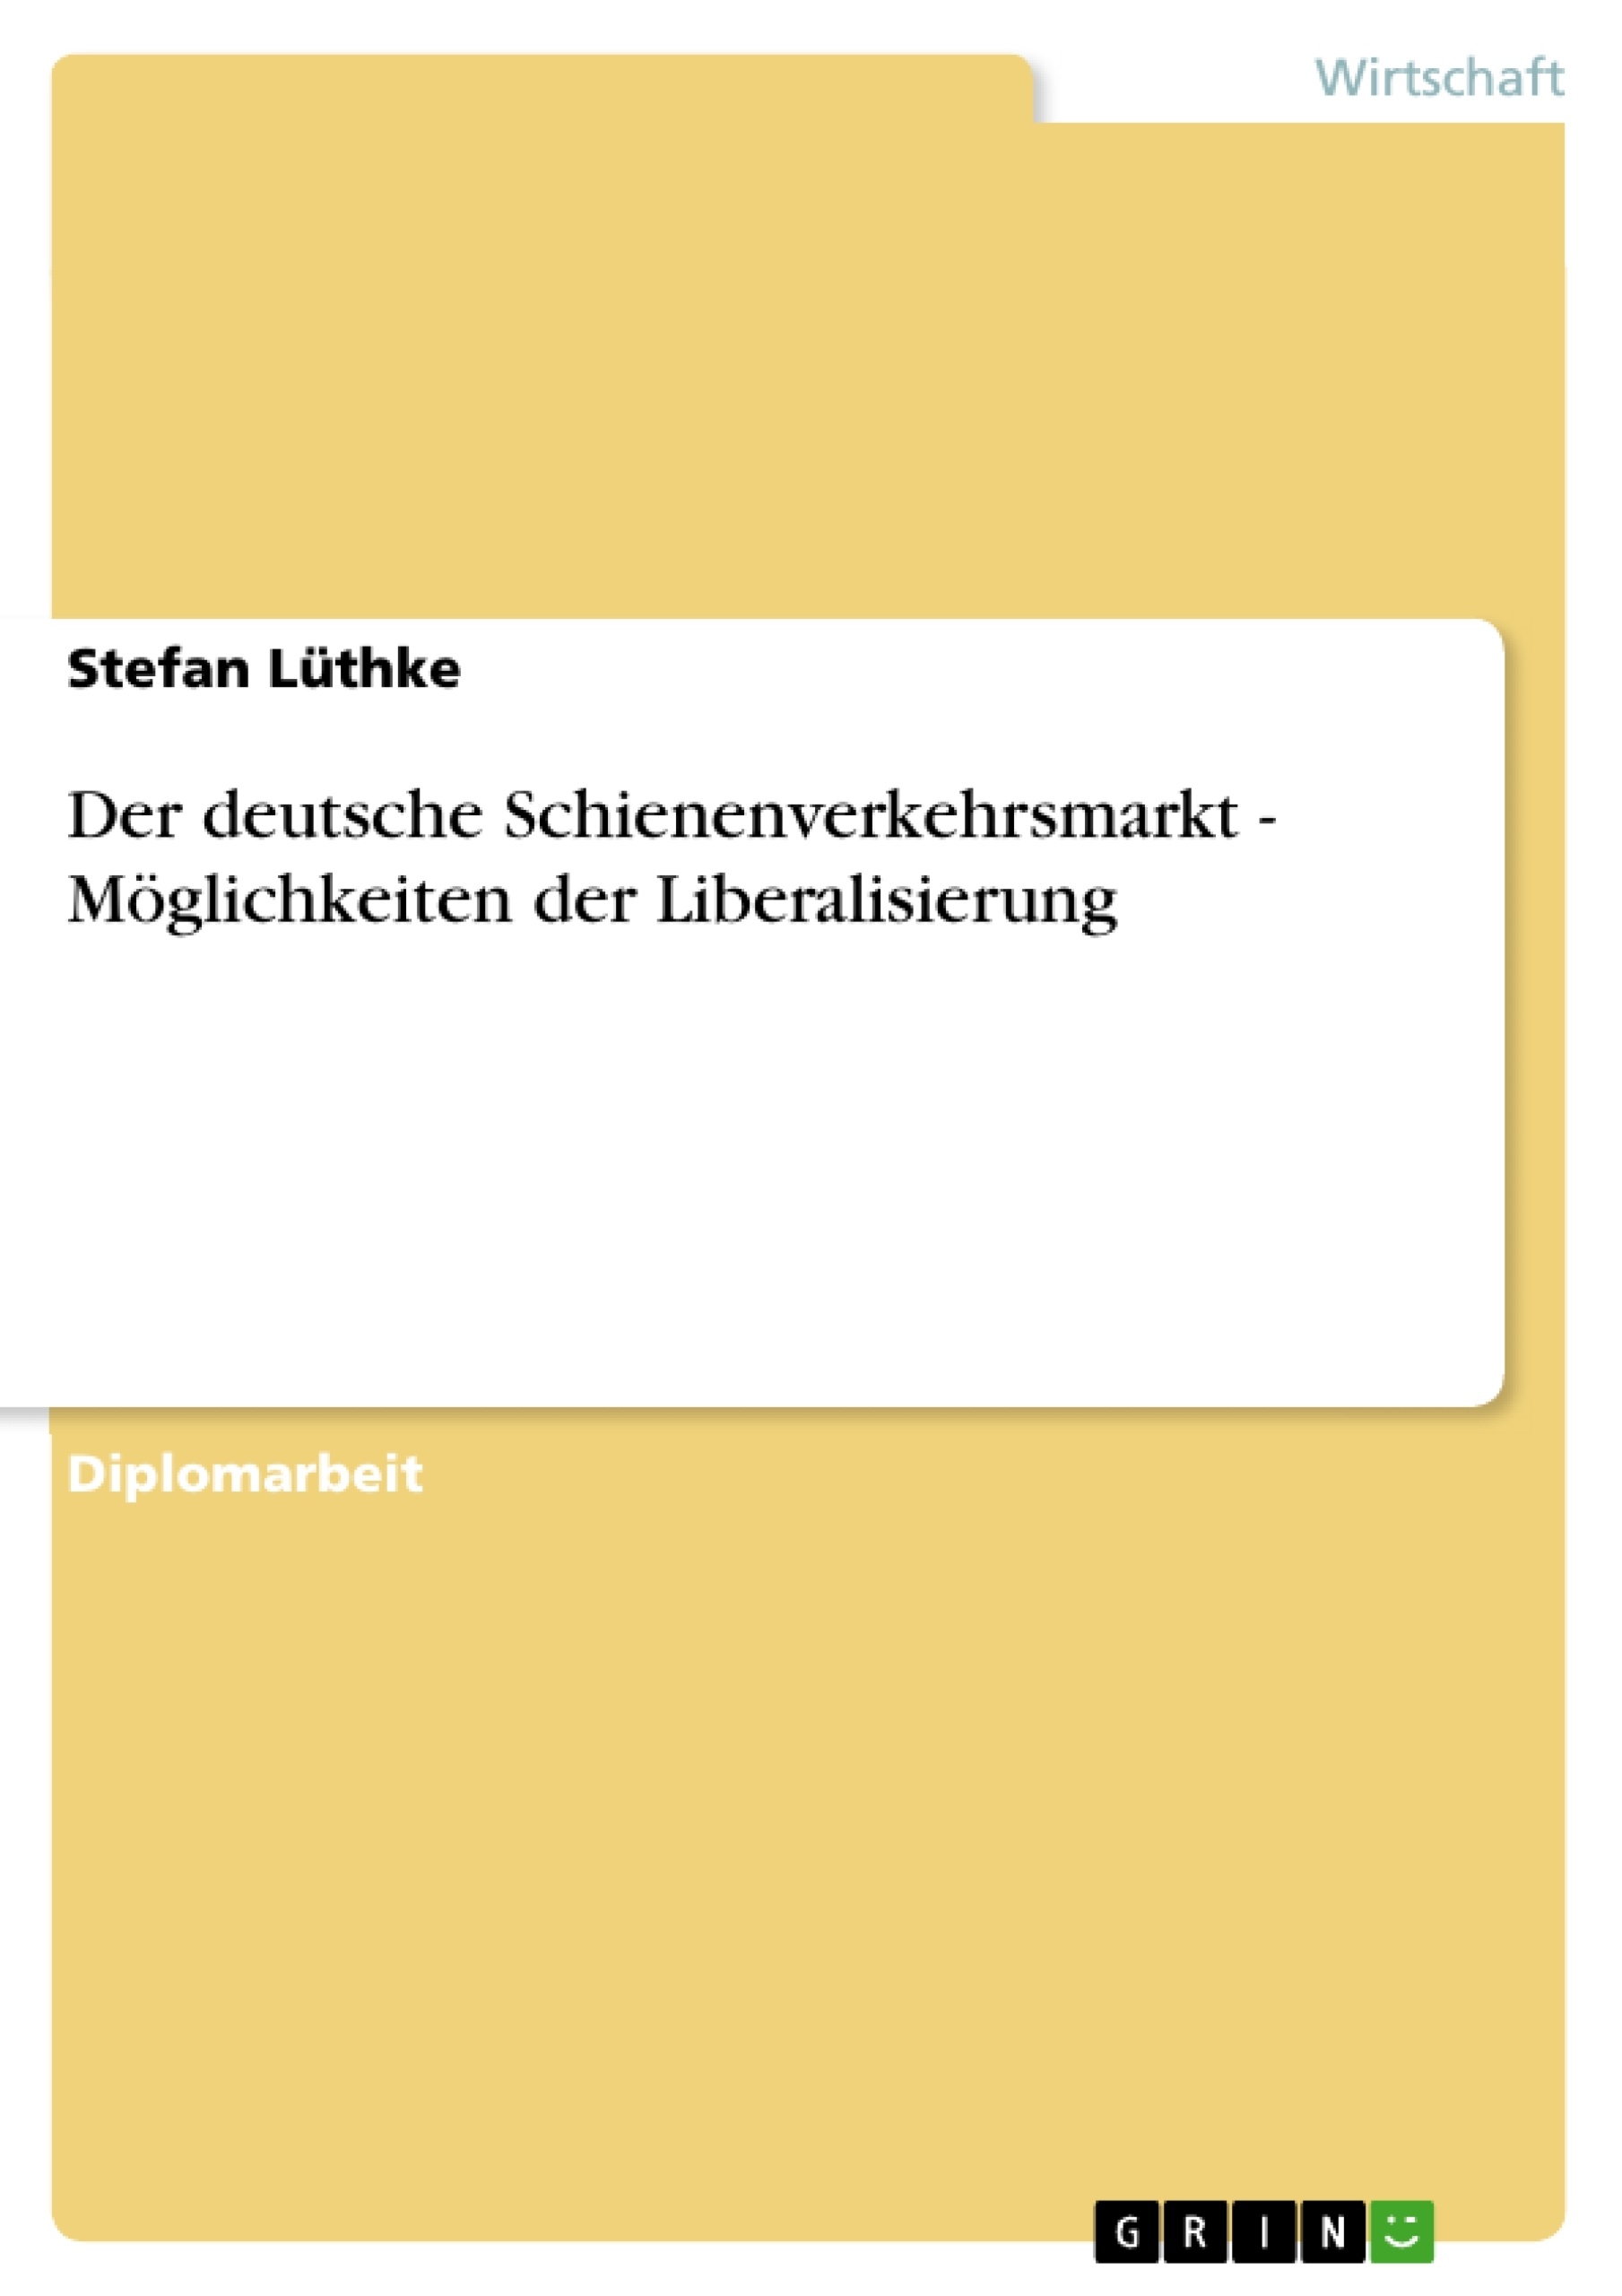 Título: Der deutsche Schienenverkehrsmarkt - Möglichkeiten der Liberalisierung